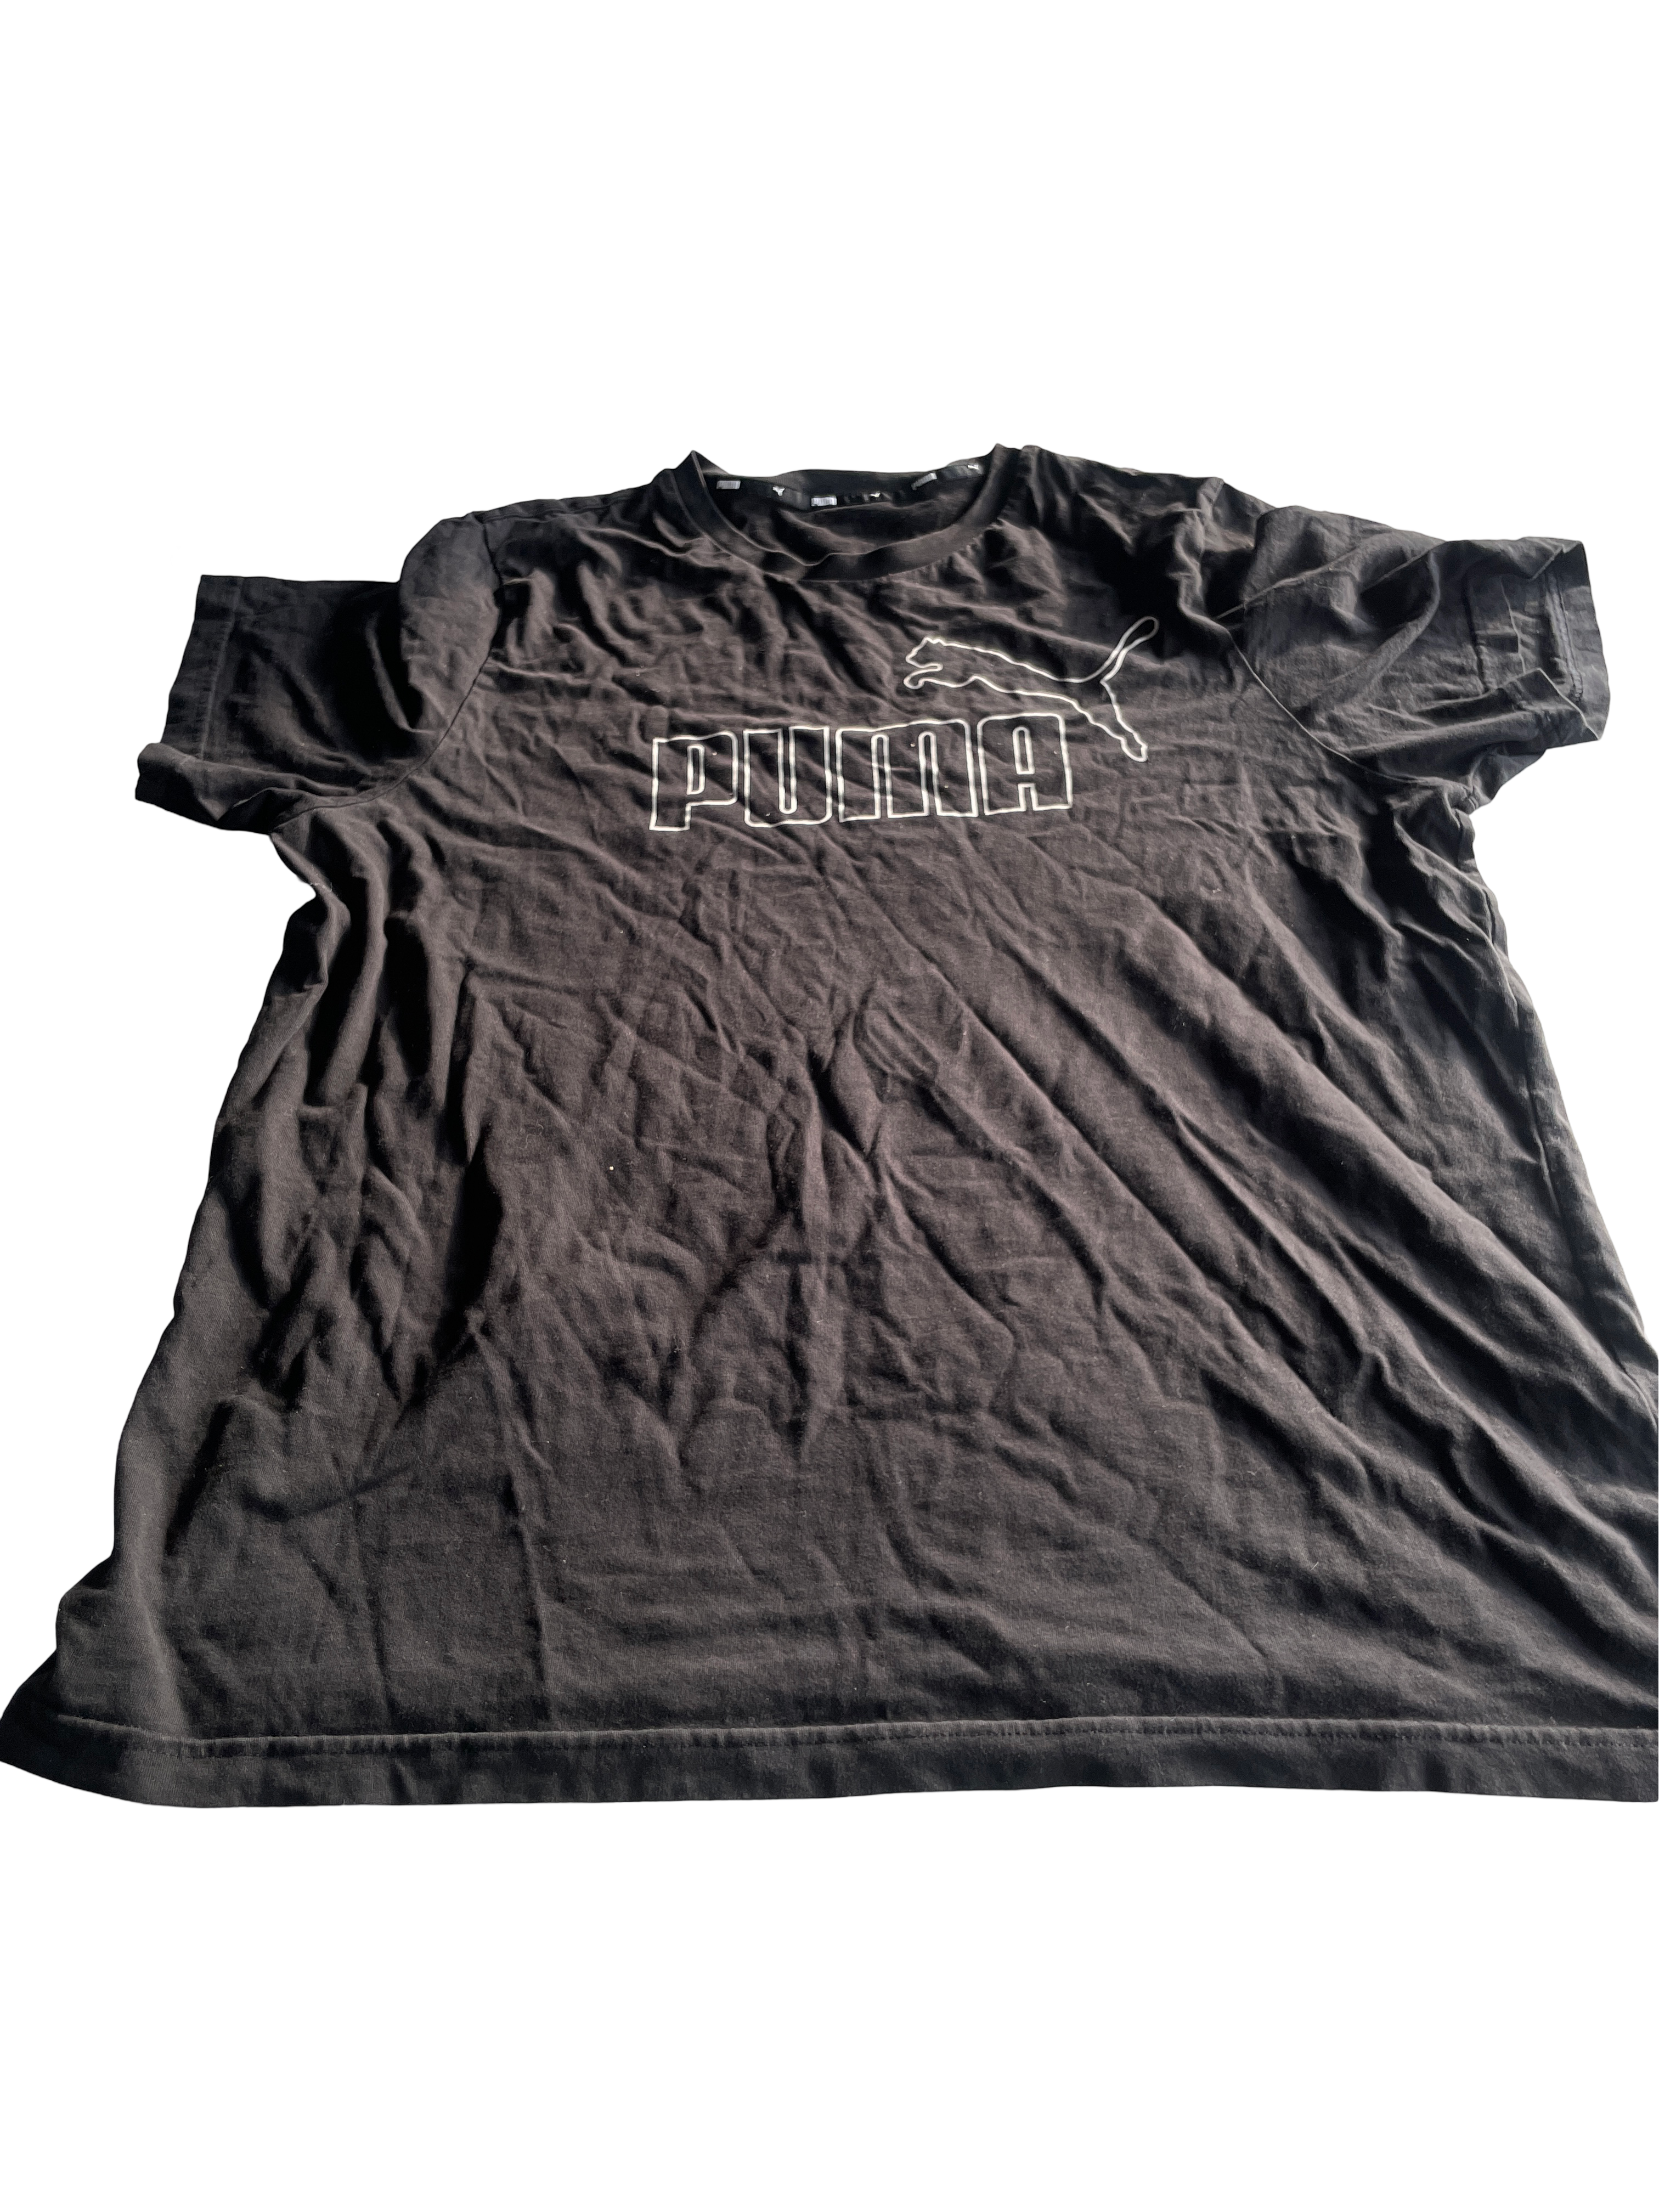 Vintage PUMA Black T-Shirts for Men - Size L (SKU 4605)